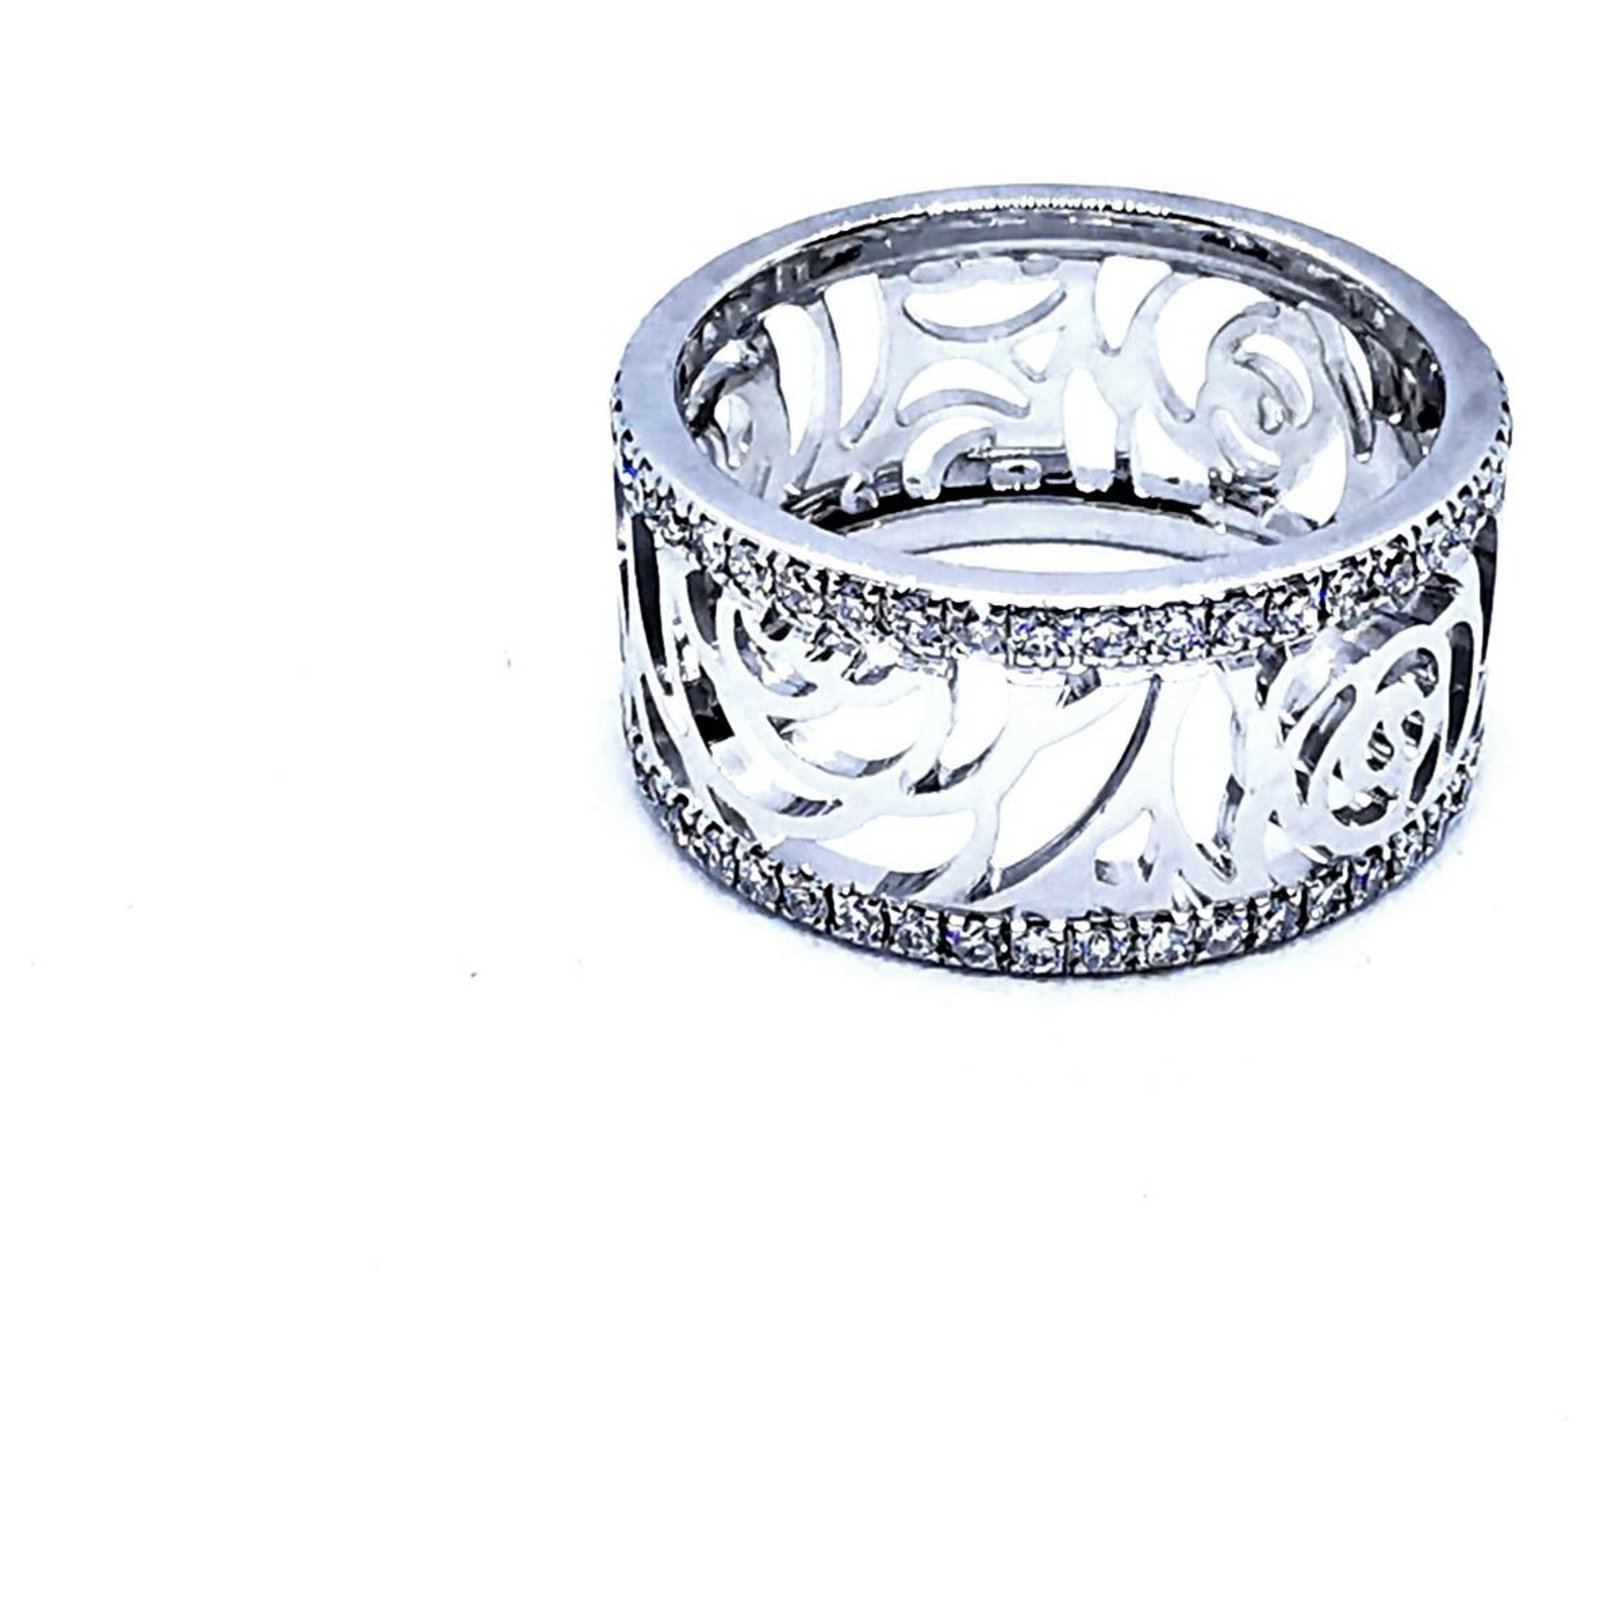 Chanel Profil de Camellia Diamond Gold Ring